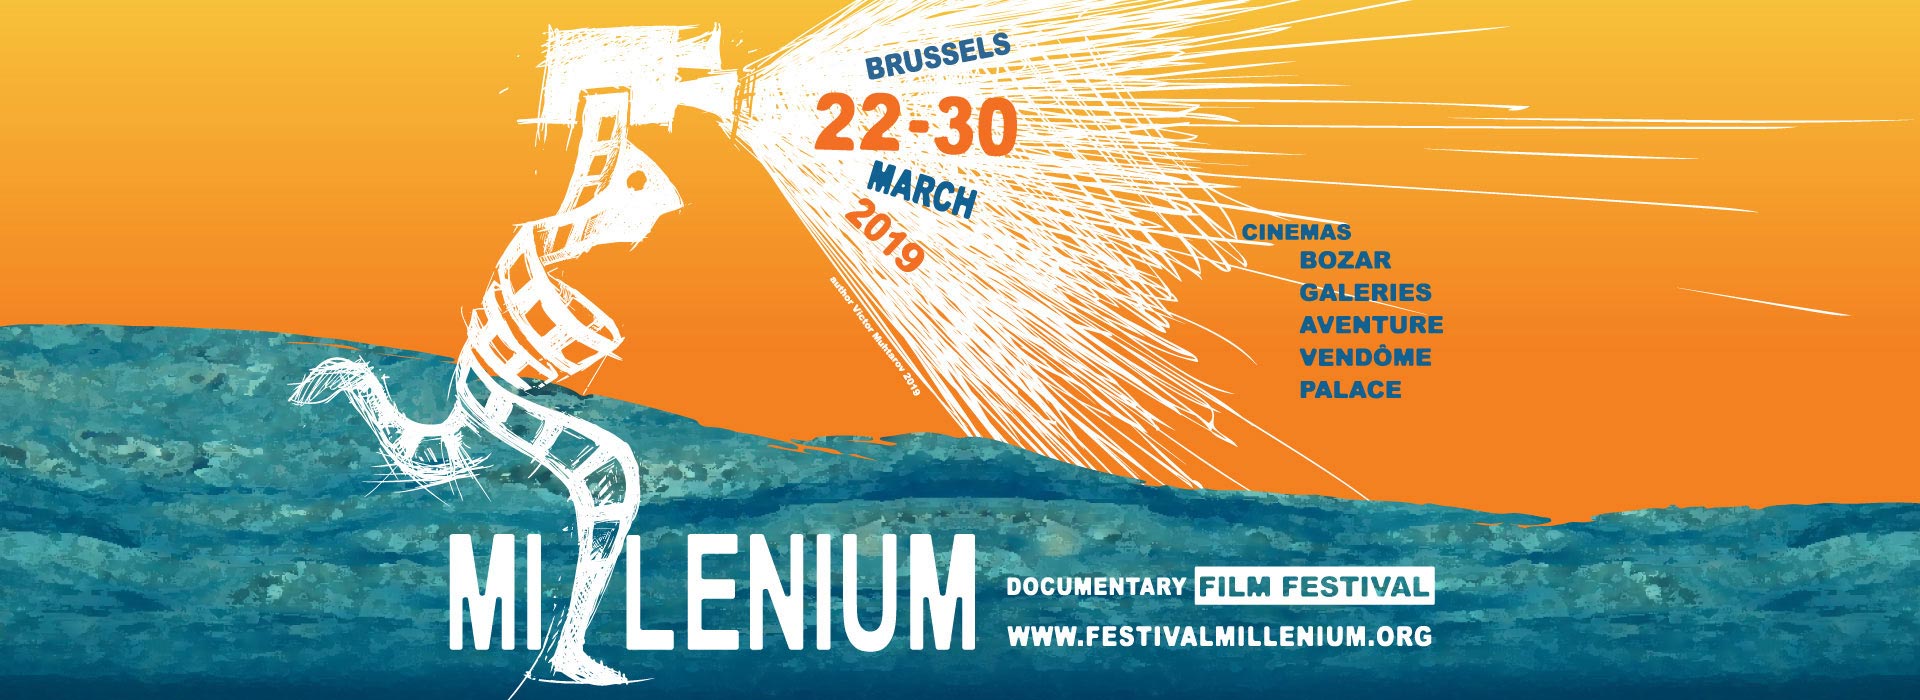 Millenium Documentury Film Festival